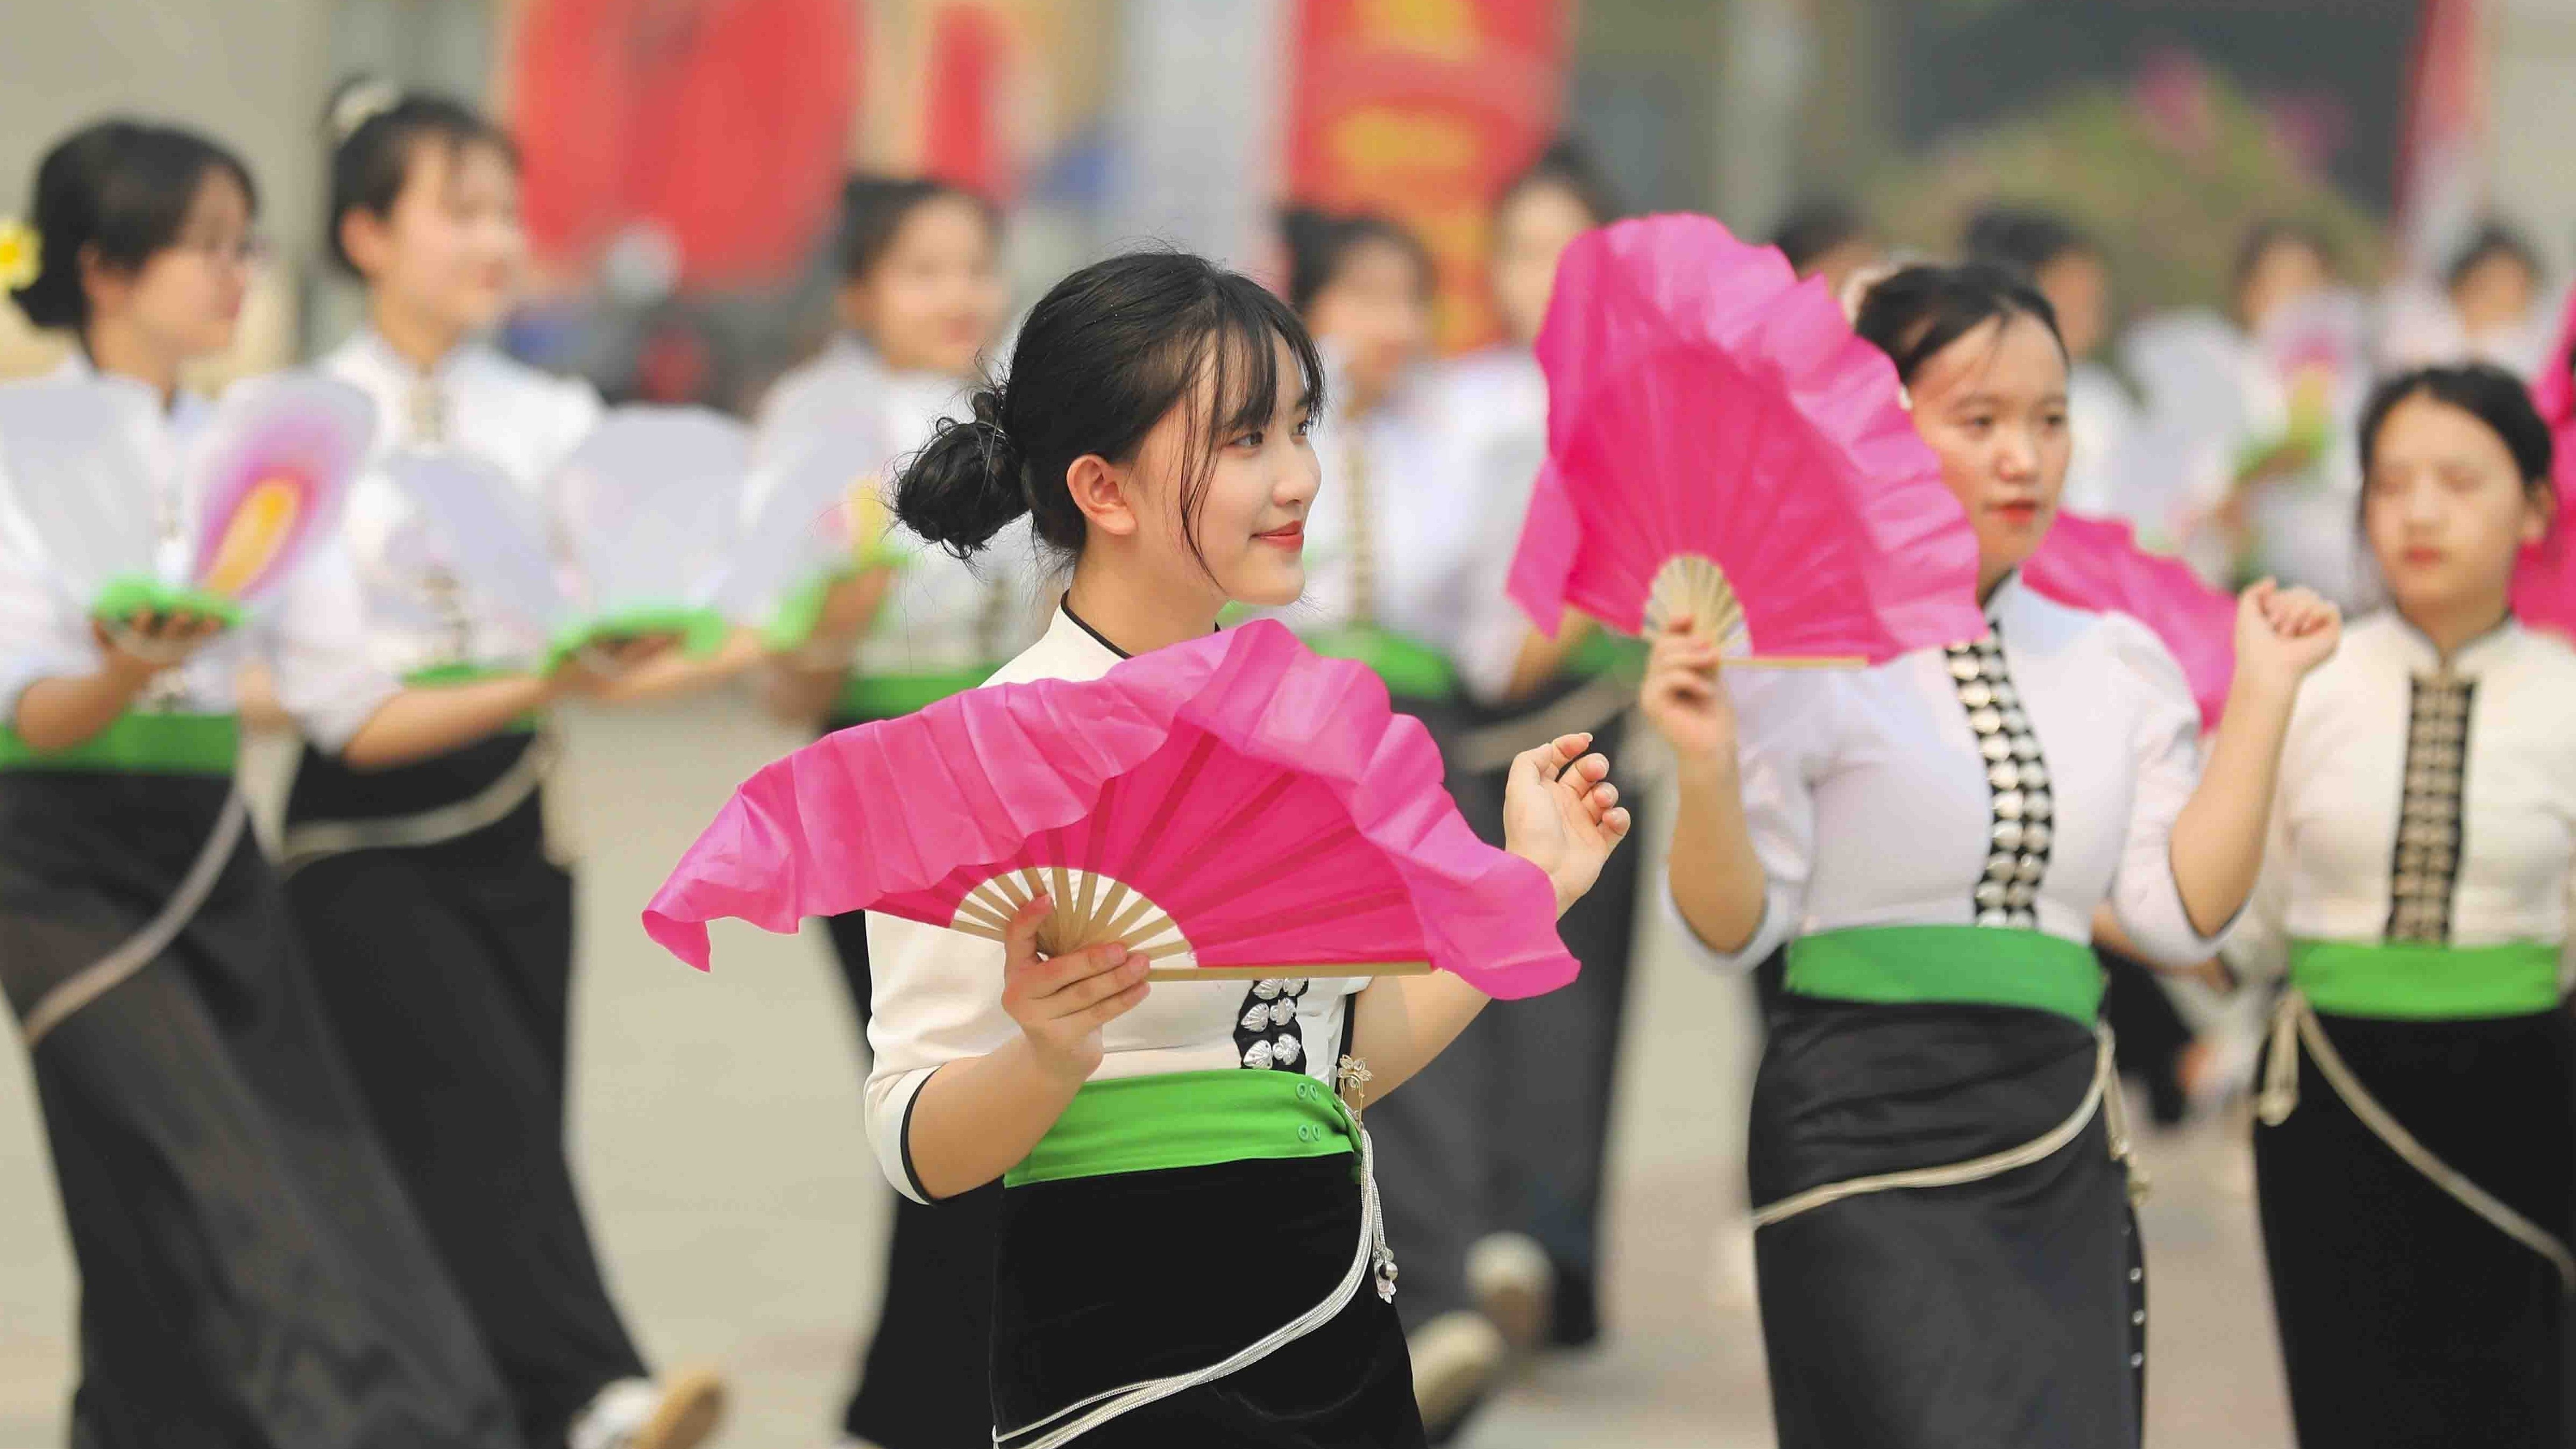 Công diễn dân vũ, điệu nhảy đường phố của học sinh, sinh viên tỉnh Điện Biên